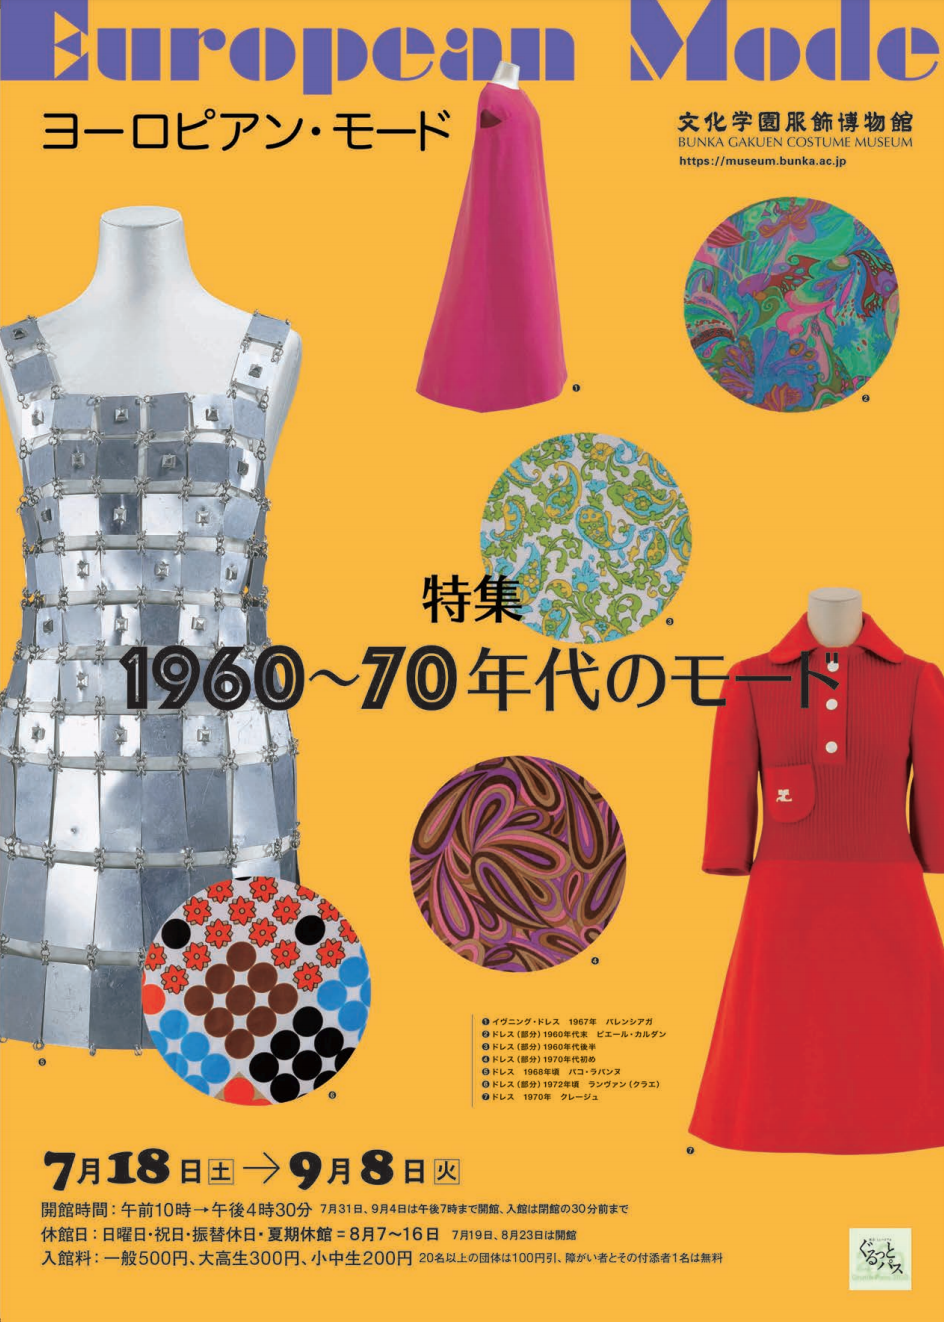 European Mode （Bunka Gakuen Costume Museum） ｜Tokyo Art Beat